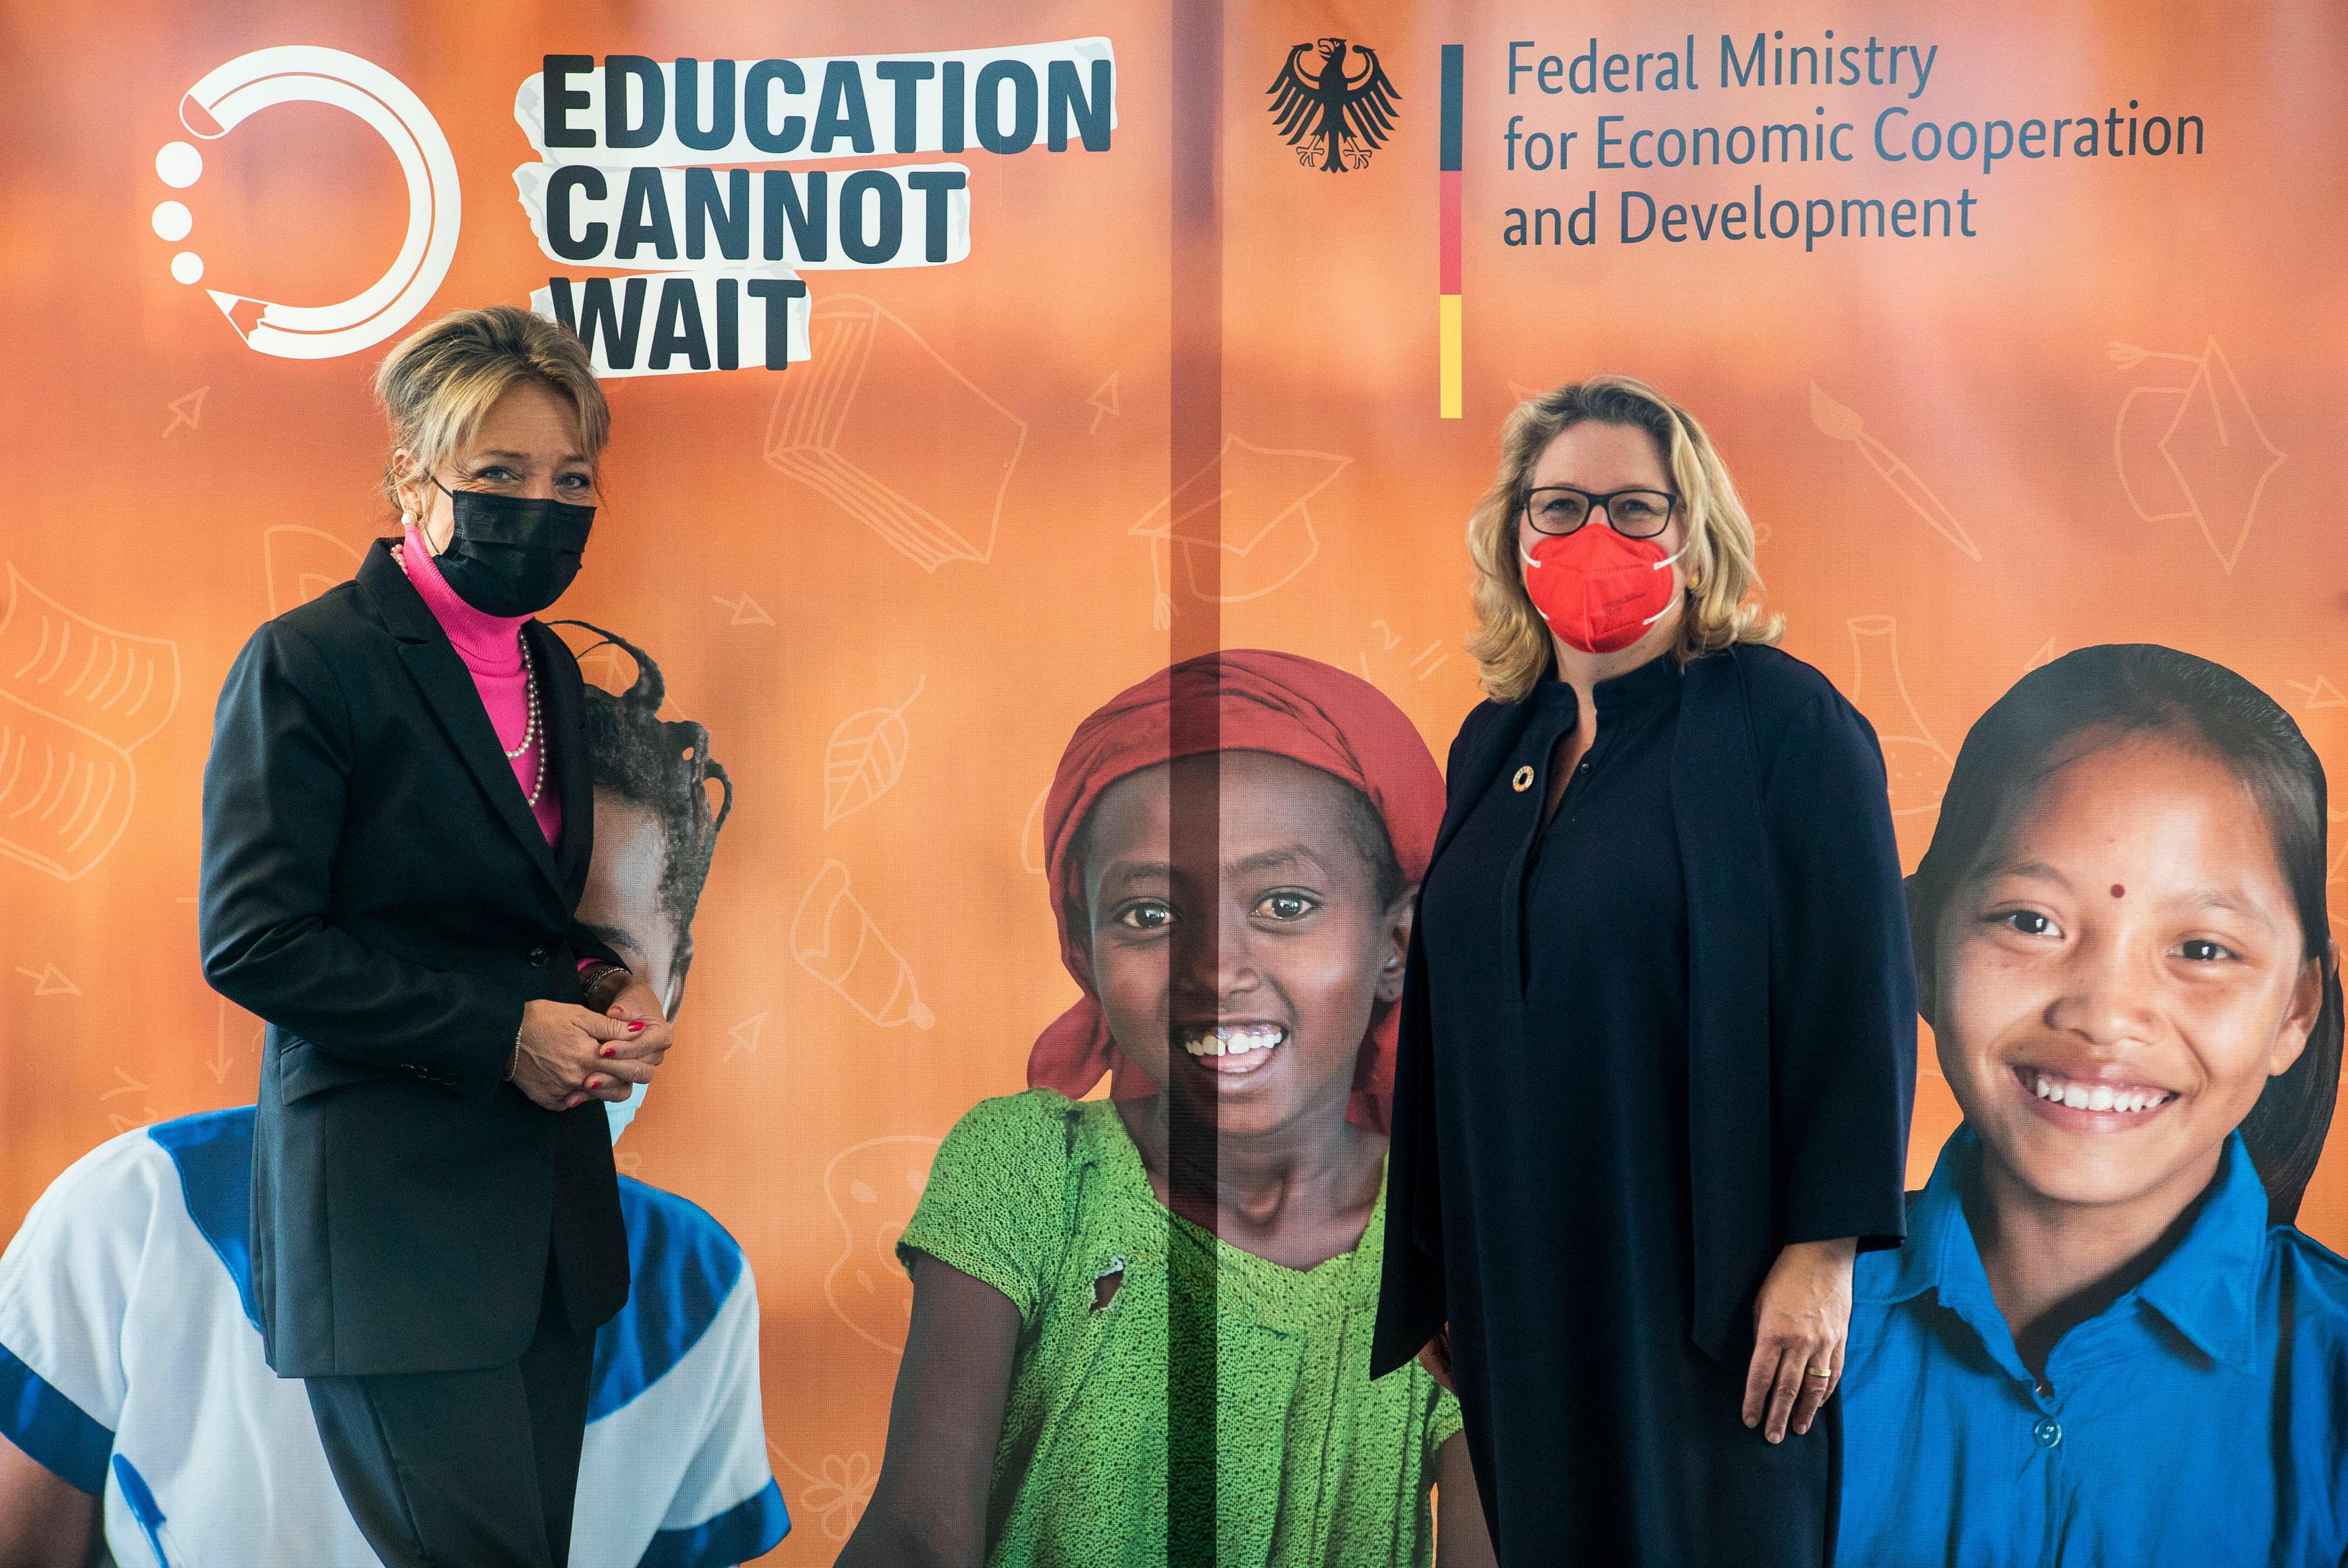 Entwicklungsministerin Svenja Schulze (rechts) mit Yasmine Sherif (links), Leiterin von "Education Cannot Wait", dem globalen Fonds der Vereinten Nationen für Bildung in Notsituationen und lang anhaltenden Krisen